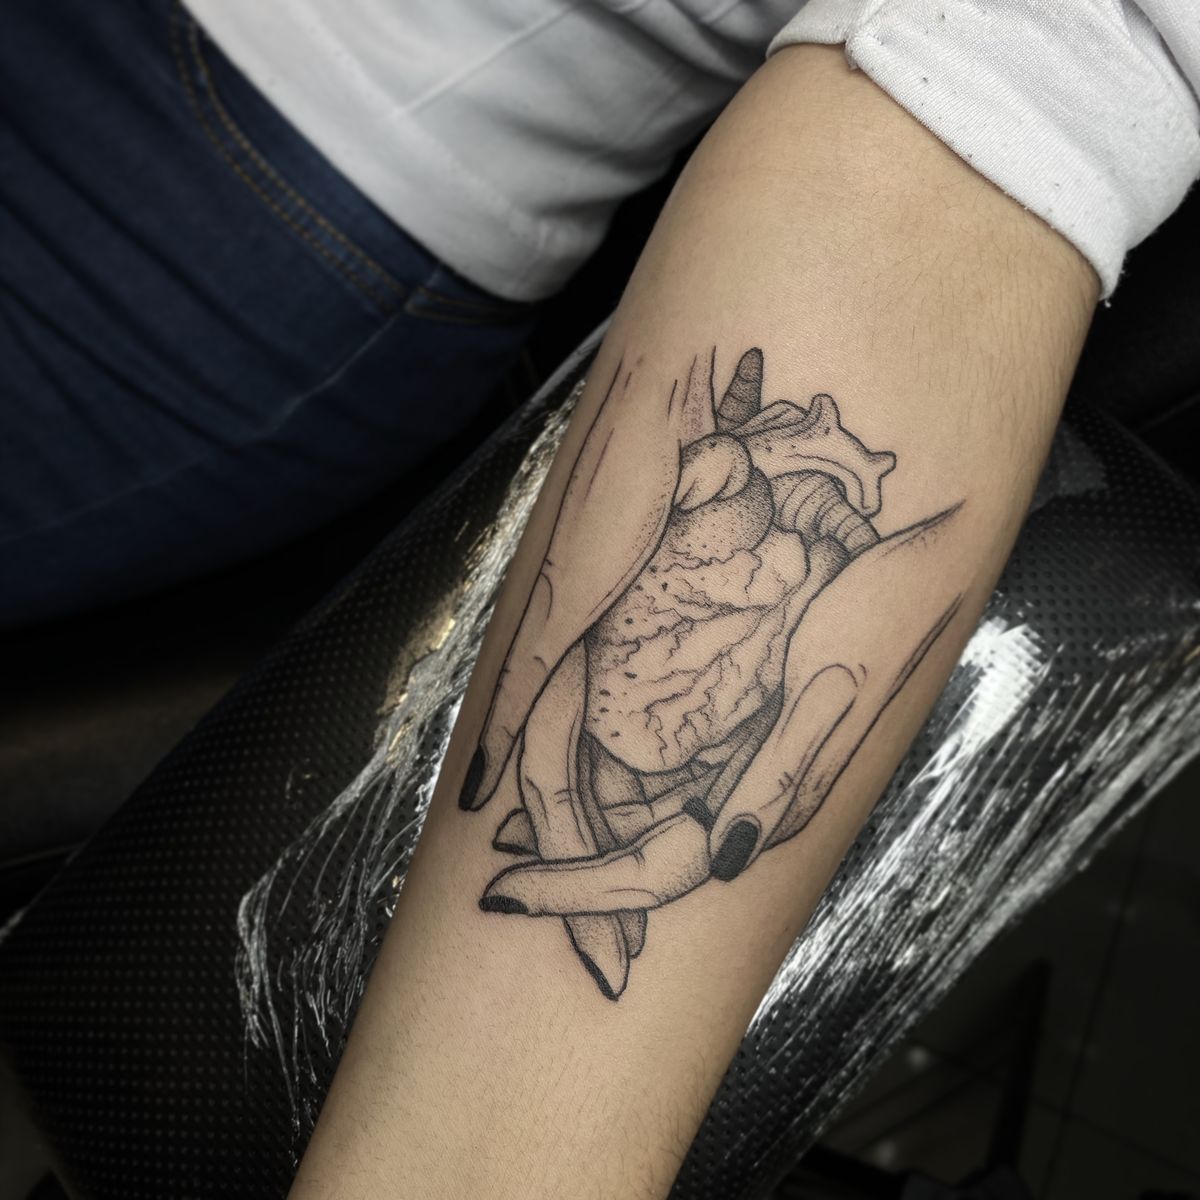 Tattoo uploaded by Cindy Rdz • Tattoodo